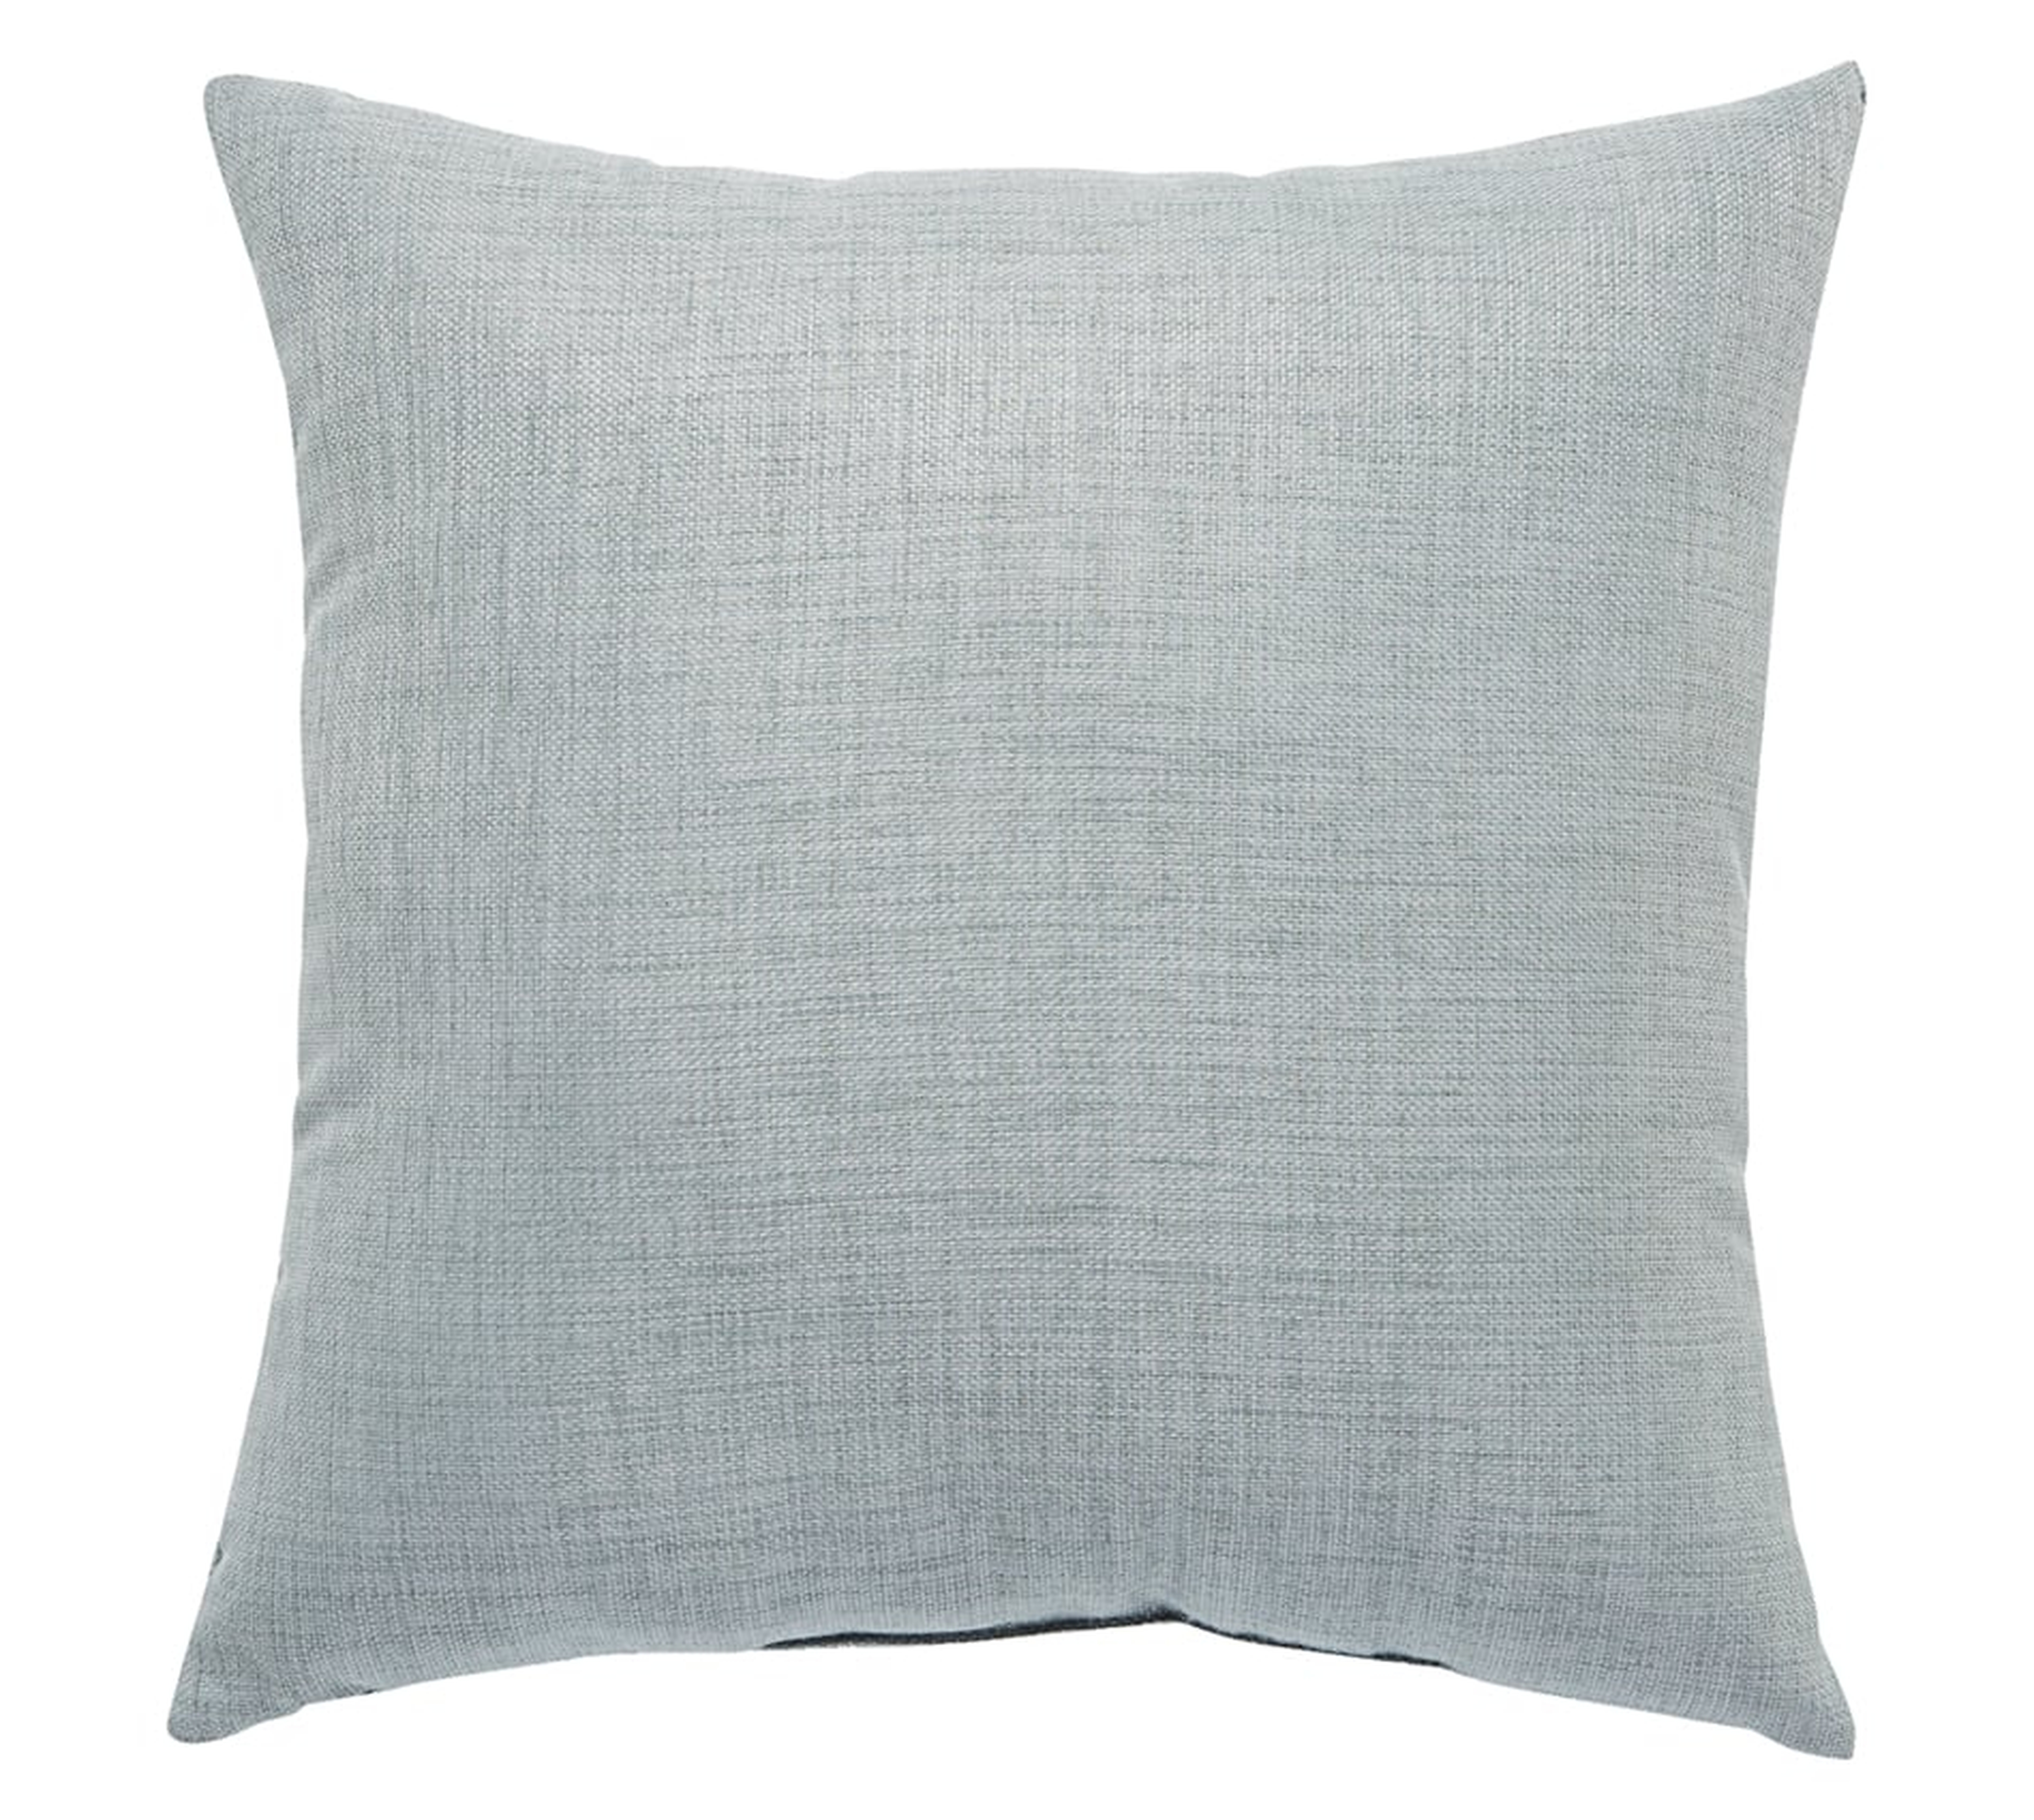 Design (US) Gray 18"X18" Pillow - Jaipur Living